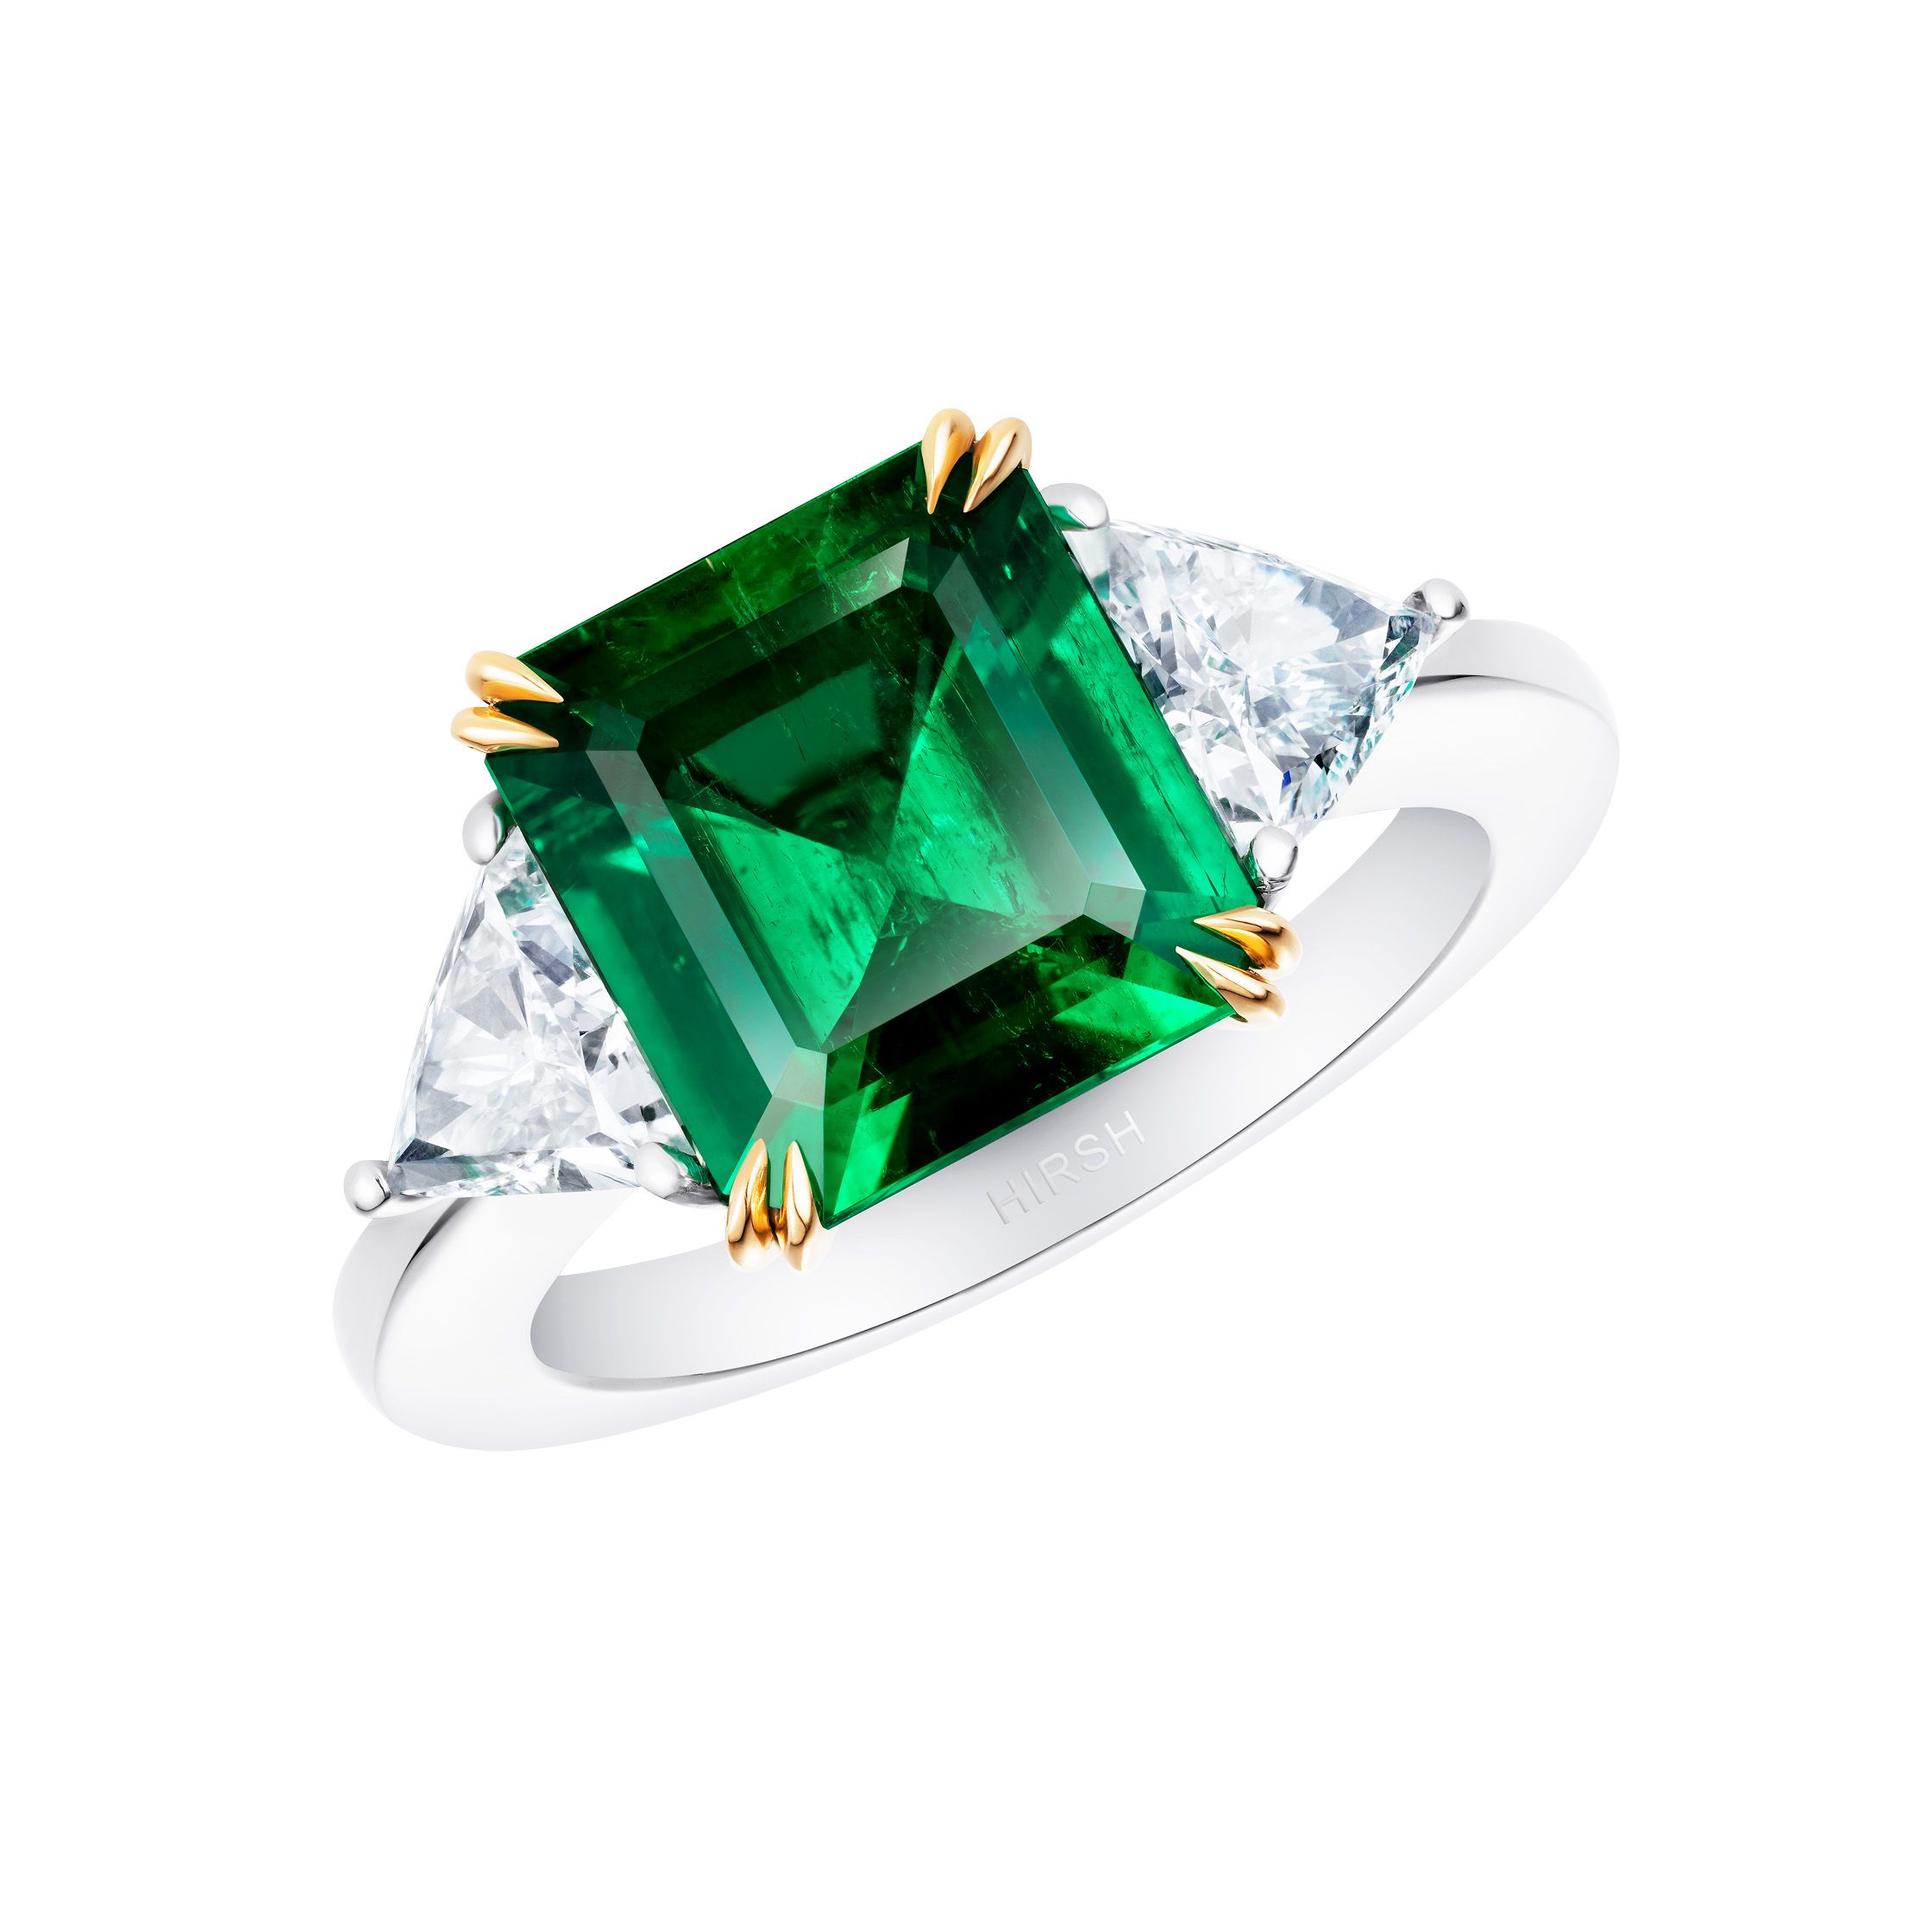 3Ct Emerald Cut Simulated Diamond Women's Anniversary Ring 14K White Gold  Finish | eBay